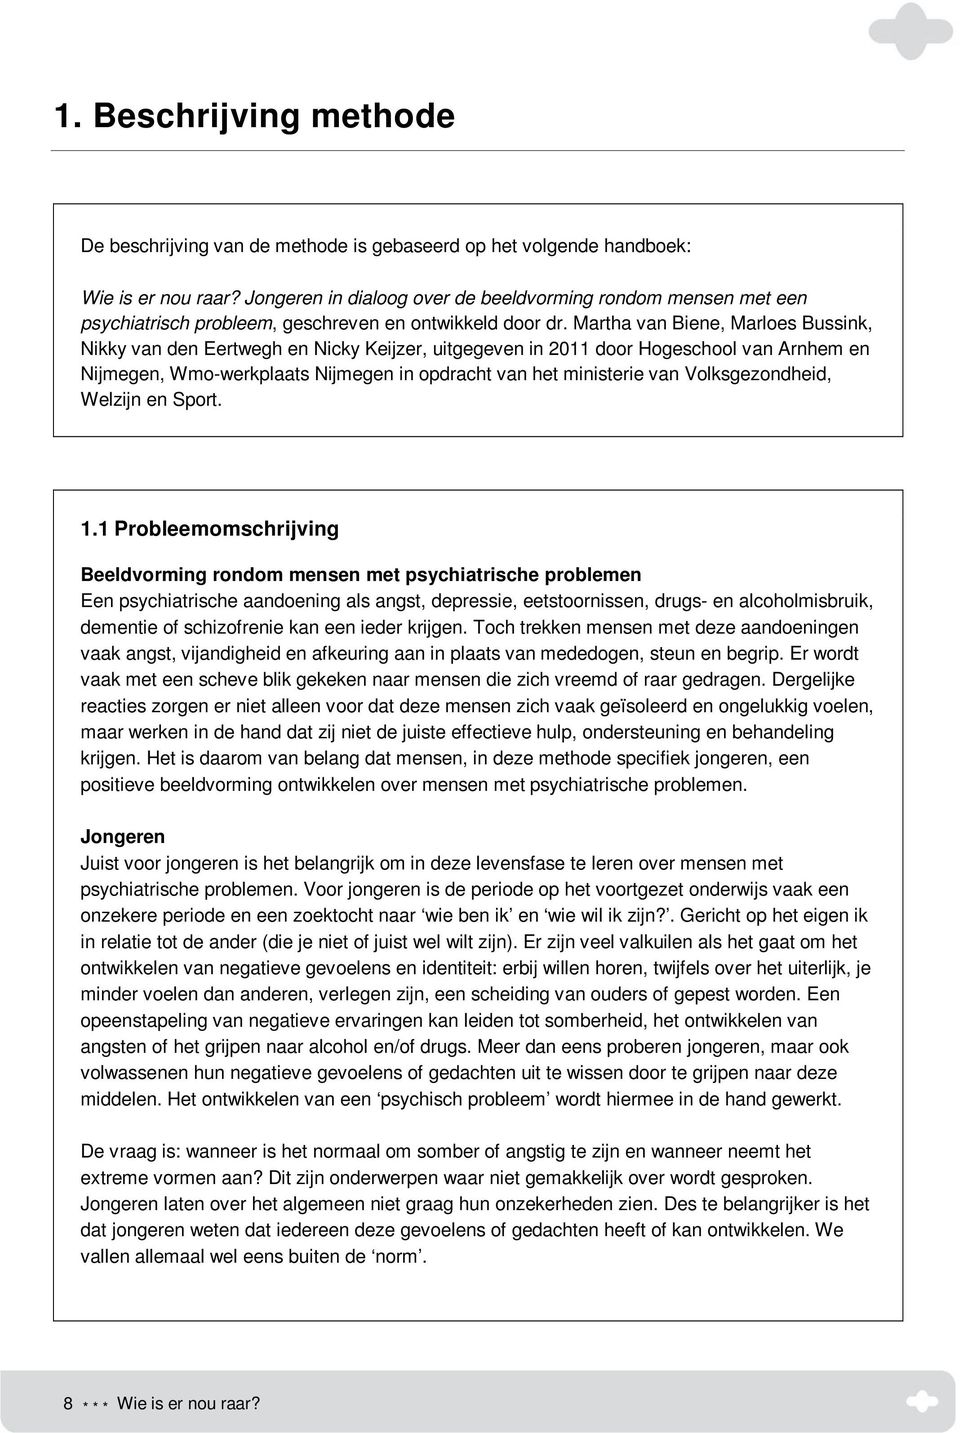 Martha van Biene, Marloes Bussink, Nikky van den Eertwegh en Nicky Keijzer, uitgegeven in 2011 door Hogeschool van Arnhem en Nijmegen, Wmo-werkplaats Nijmegen in opdracht van het ministerie van